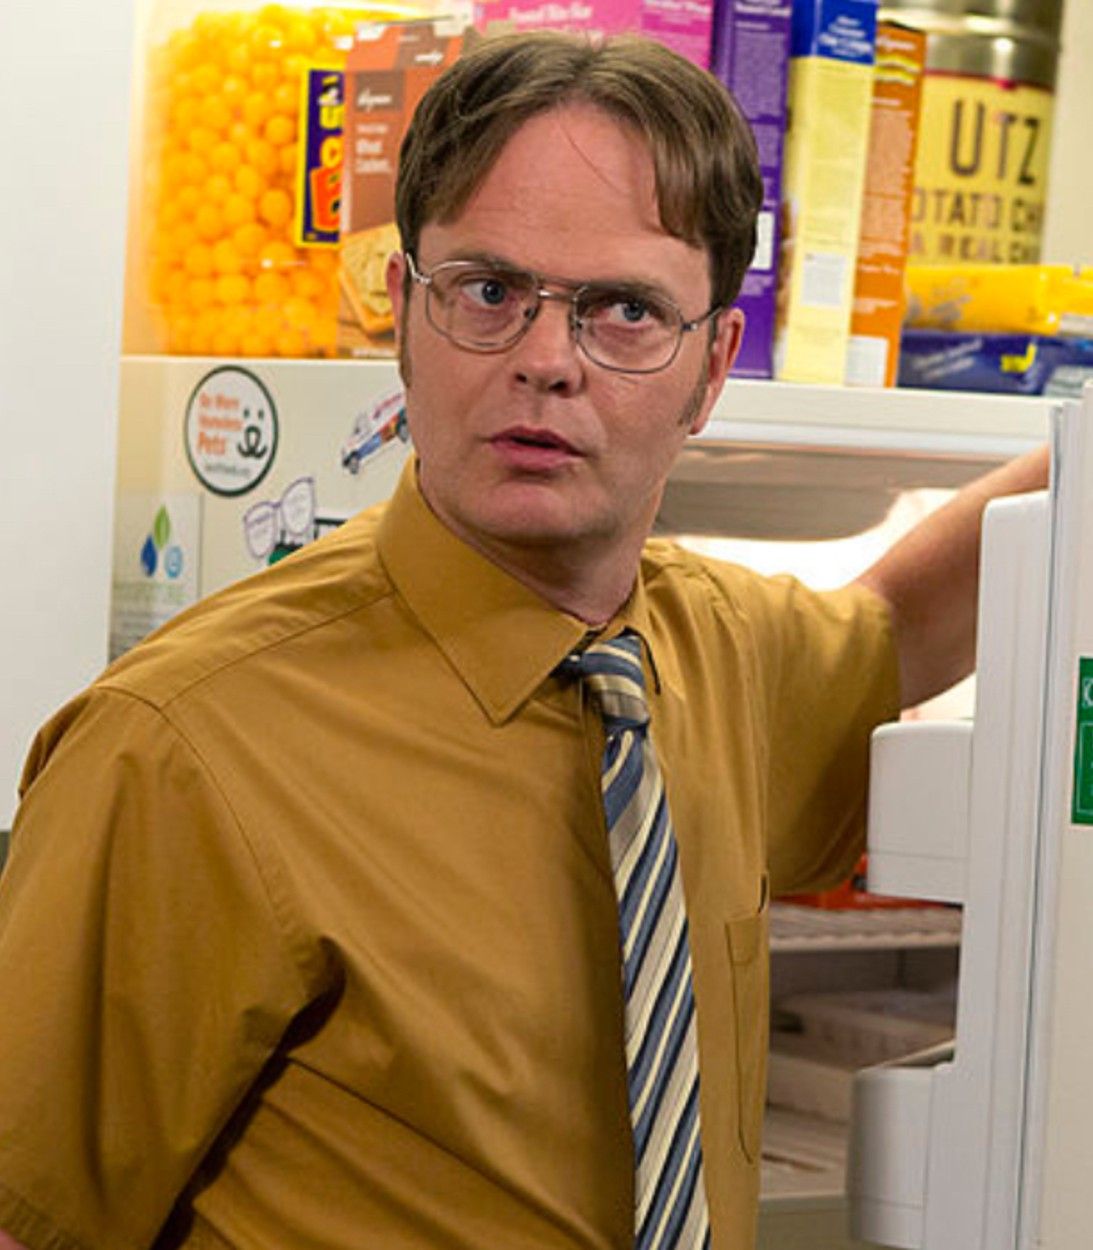 The Office Dwight Schrute Rainn Wilson pic vertical